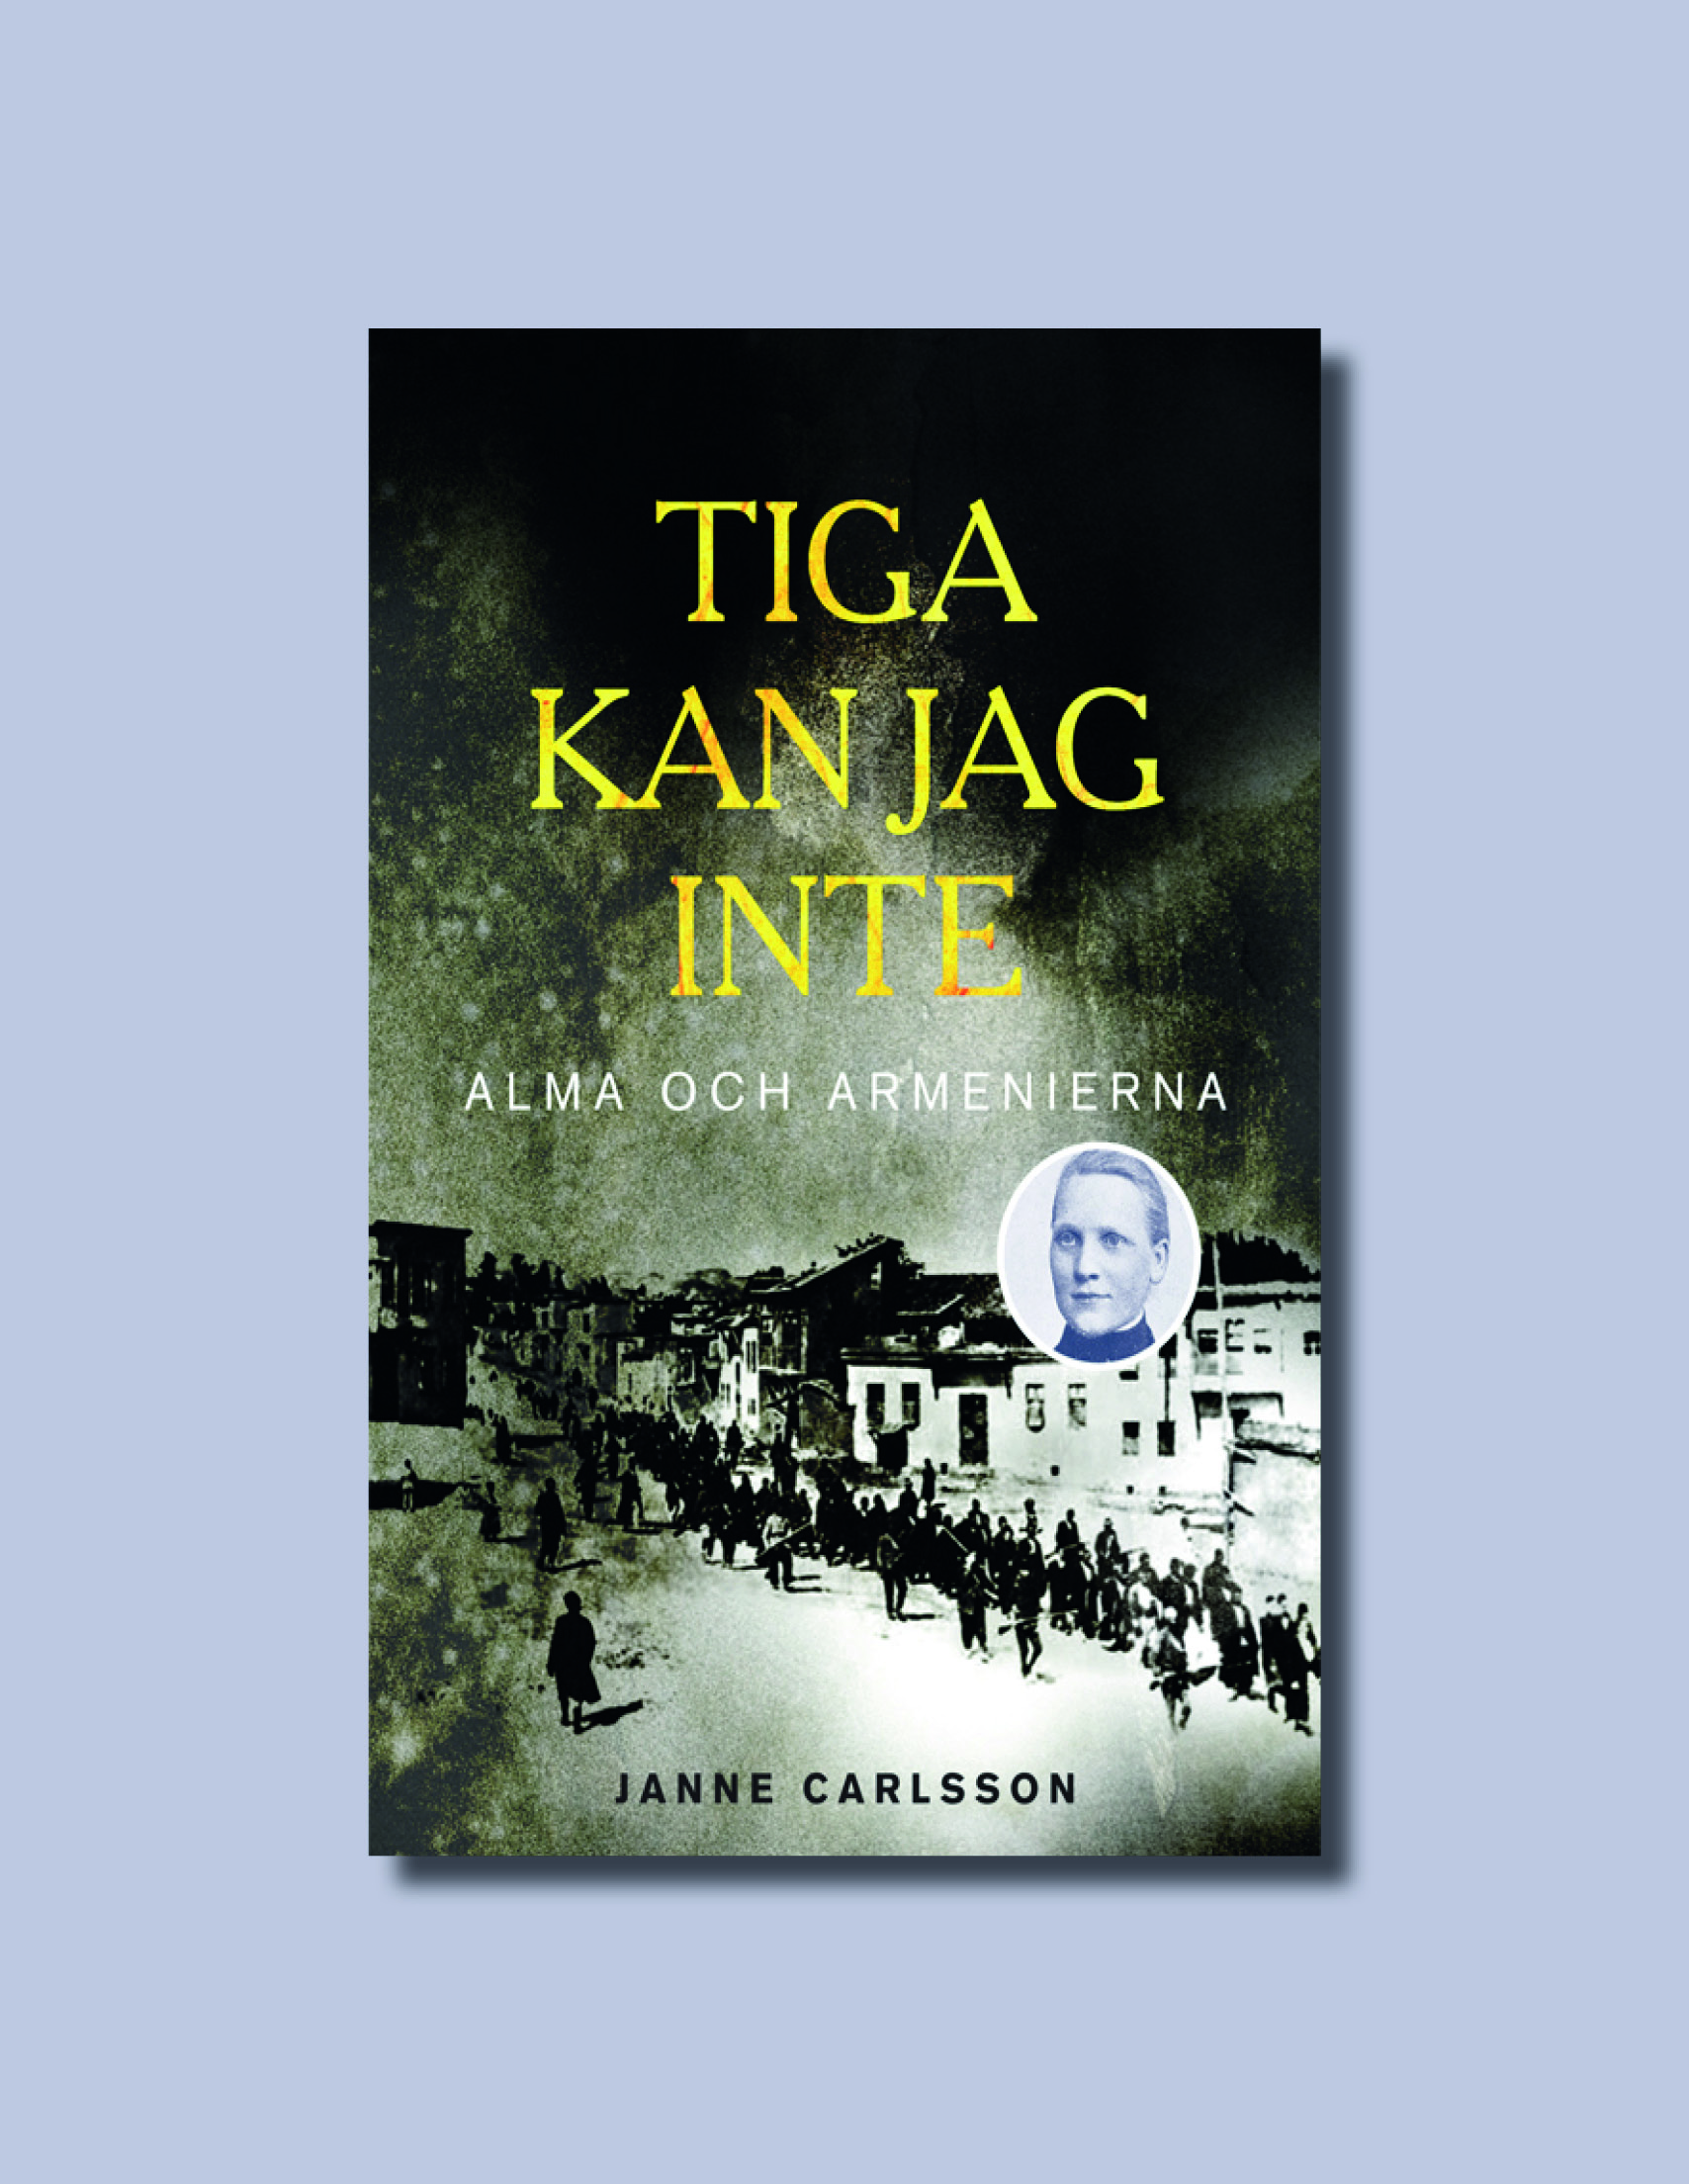 Tiga kan jag inte: Alma och armenierna av Janne Carlsson